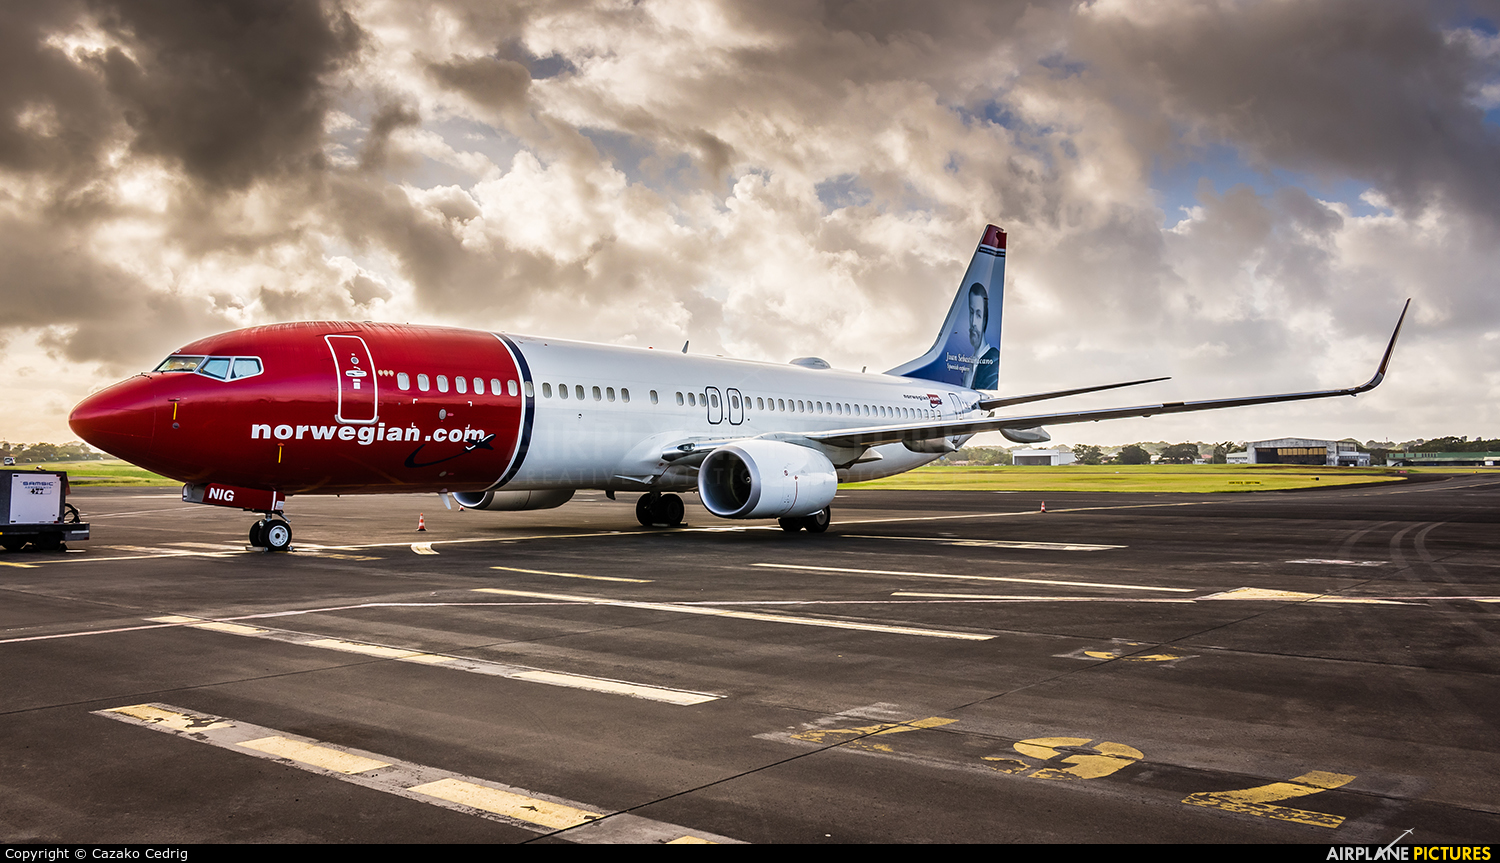 Desserte aérienne: La compagnie aérienne à bas coût Norwegian ne desservira plus les Antilles